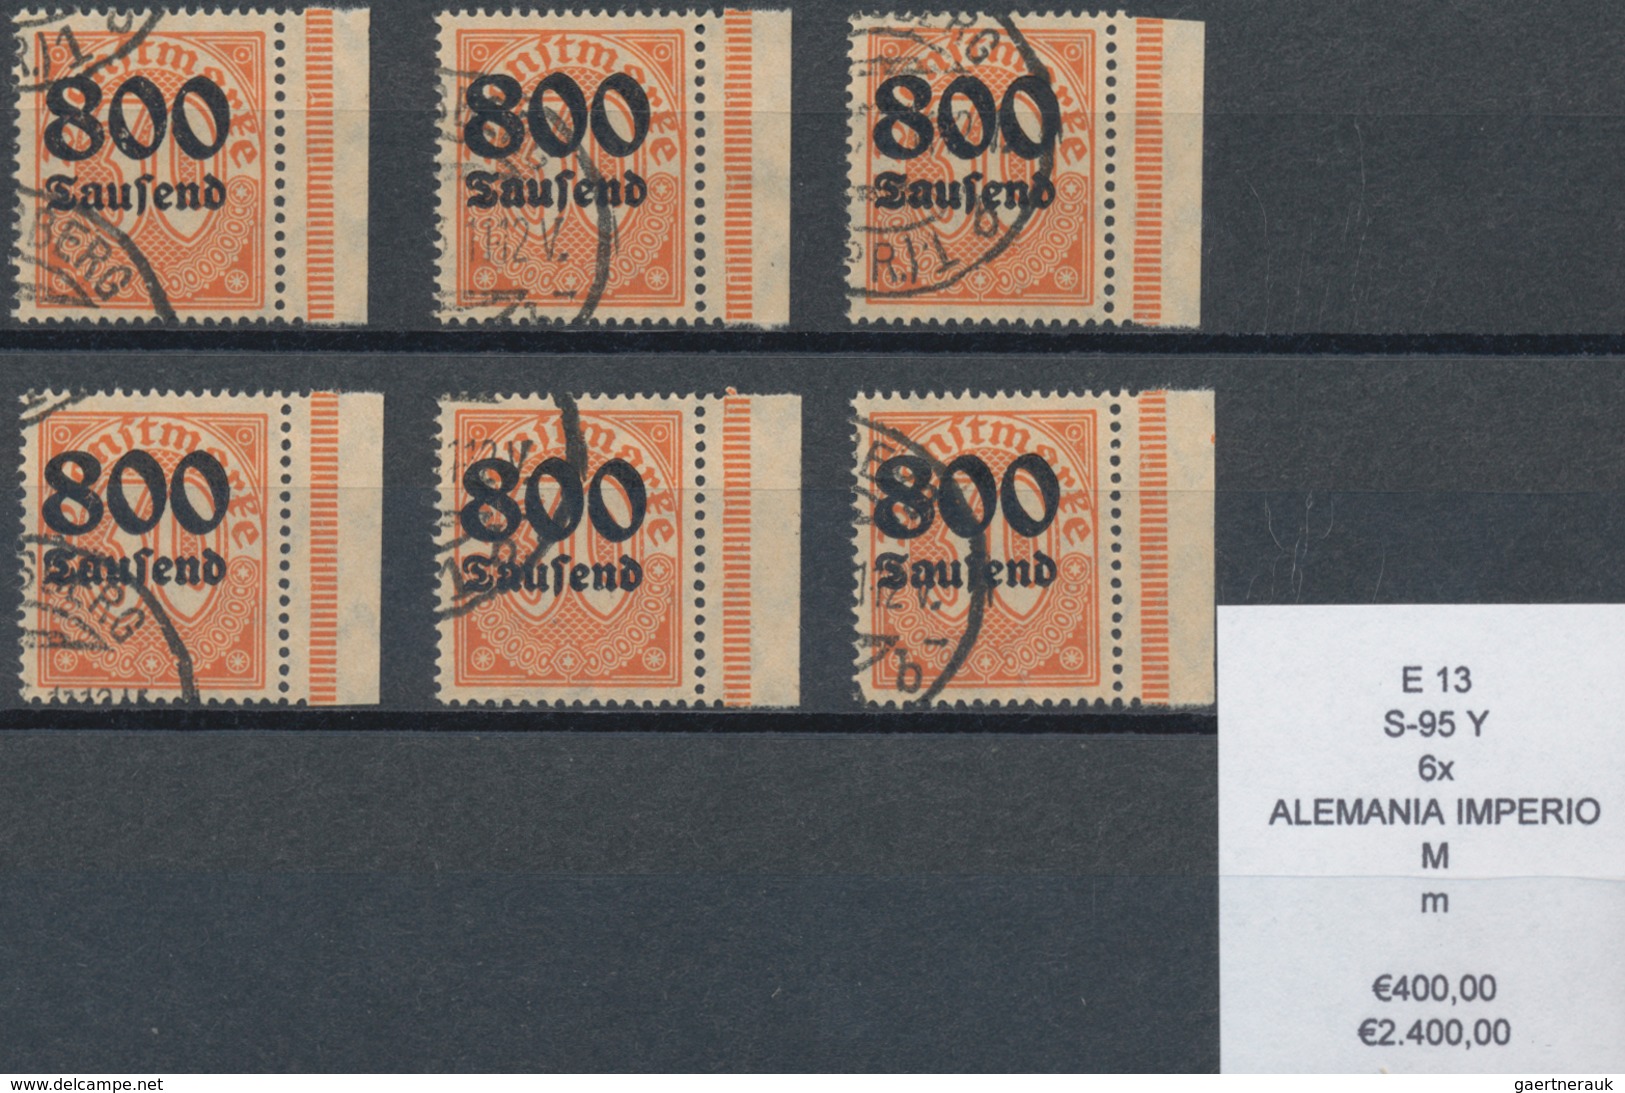 Deutsches Reich: 1890-1940, enorm umfangreicher Bestand ab Krone/Adler, sauber sortiert auf geschätz